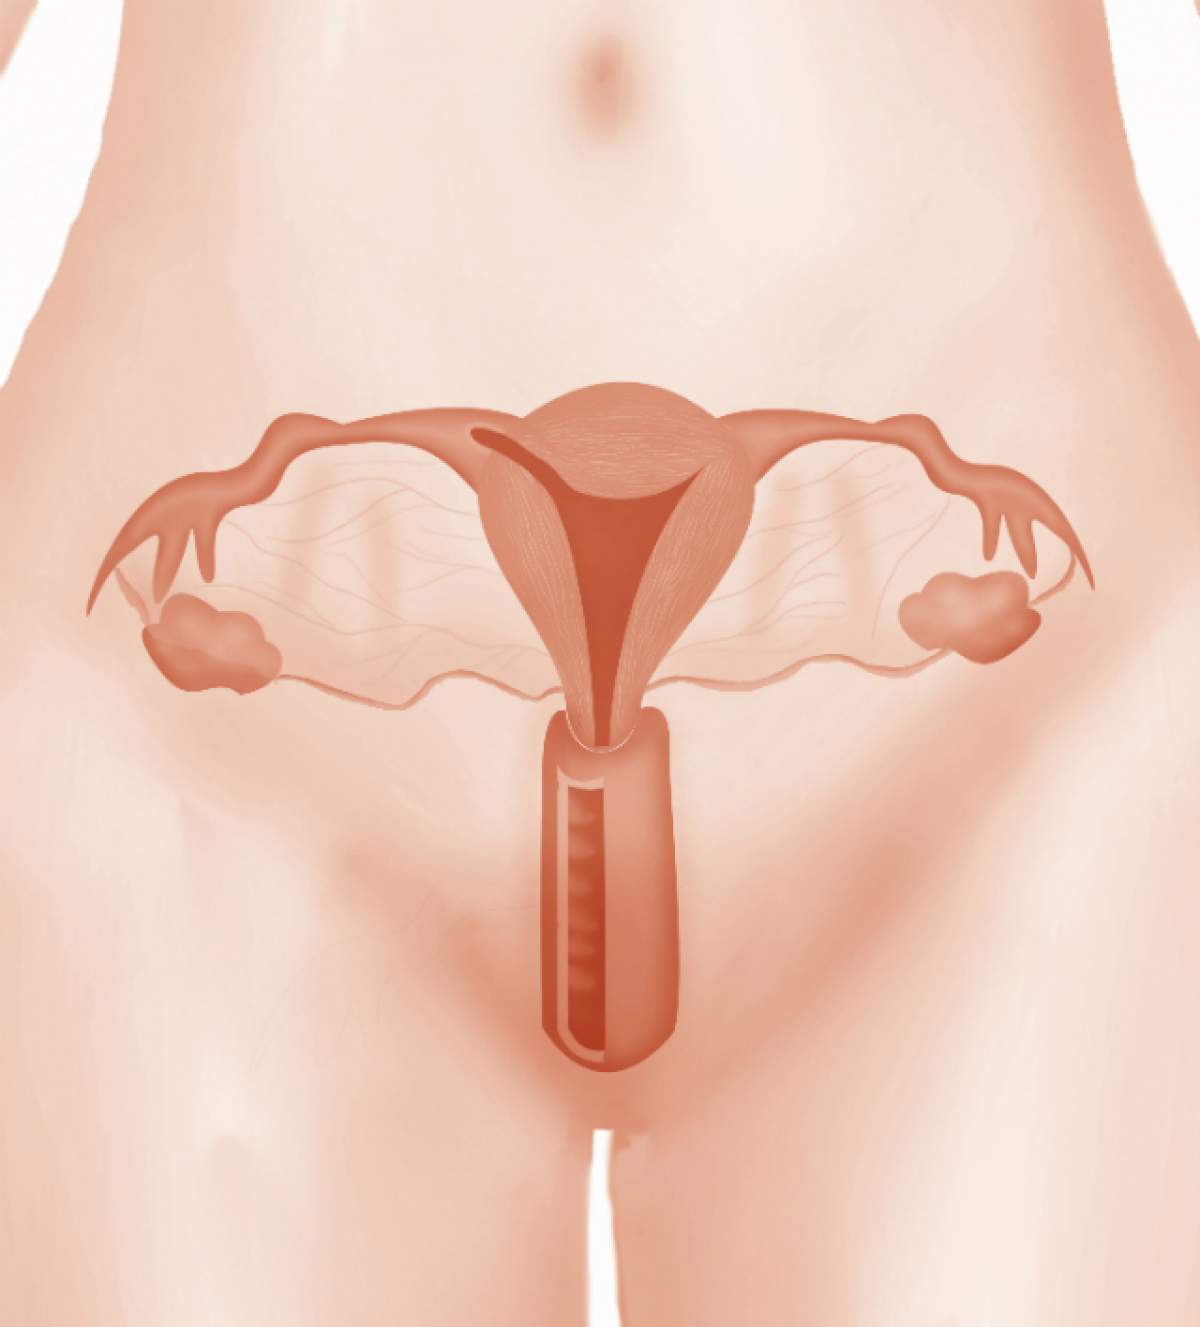 Sindromul ovarelor polichistice. Peste 50% din femei nu prezintă simptome ale acestei boli periculoase